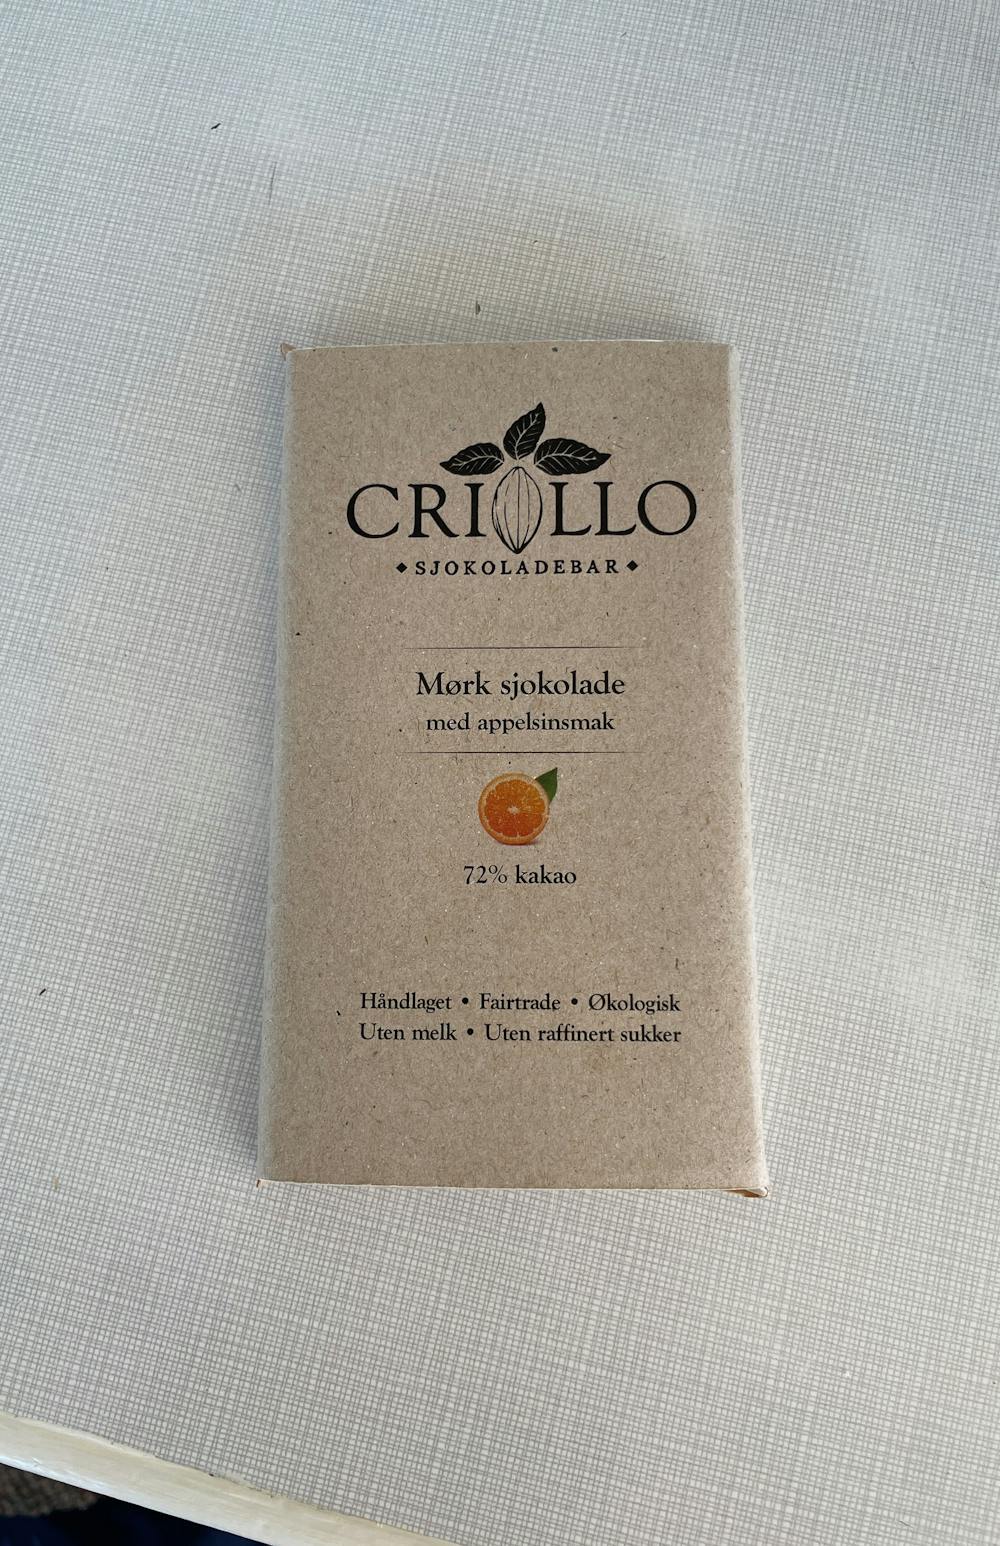 Mørk sjokolade med appelsinsmak, Crillo